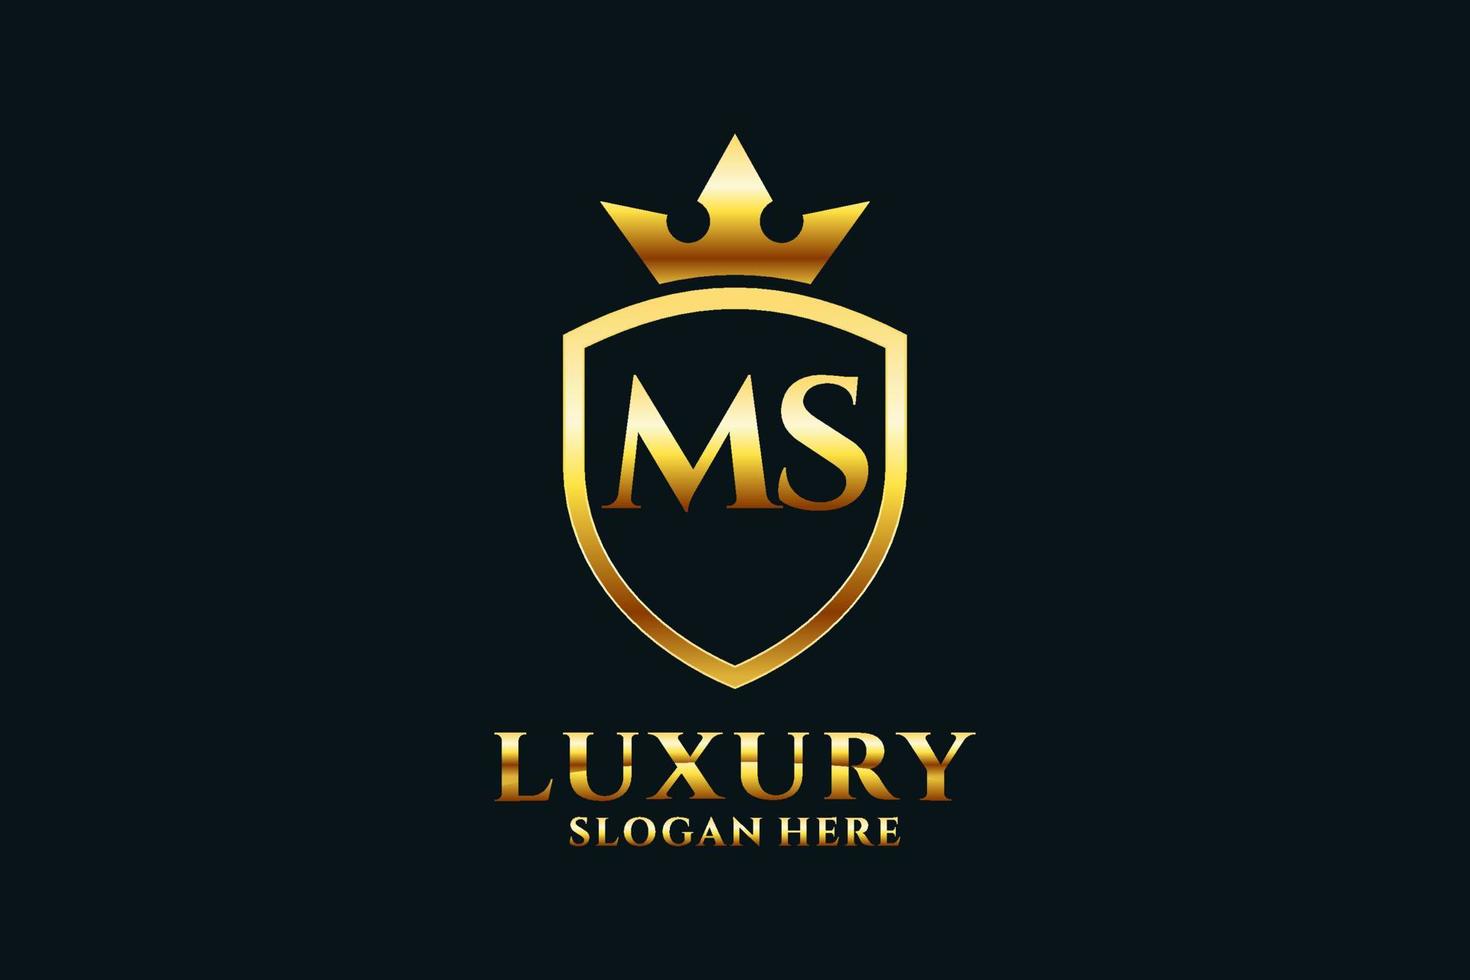 logotipo de monograma de lujo inicial ms elegante o plantilla de placa con pergaminos y corona real - perfecto para proyectos de marca de lujo vector